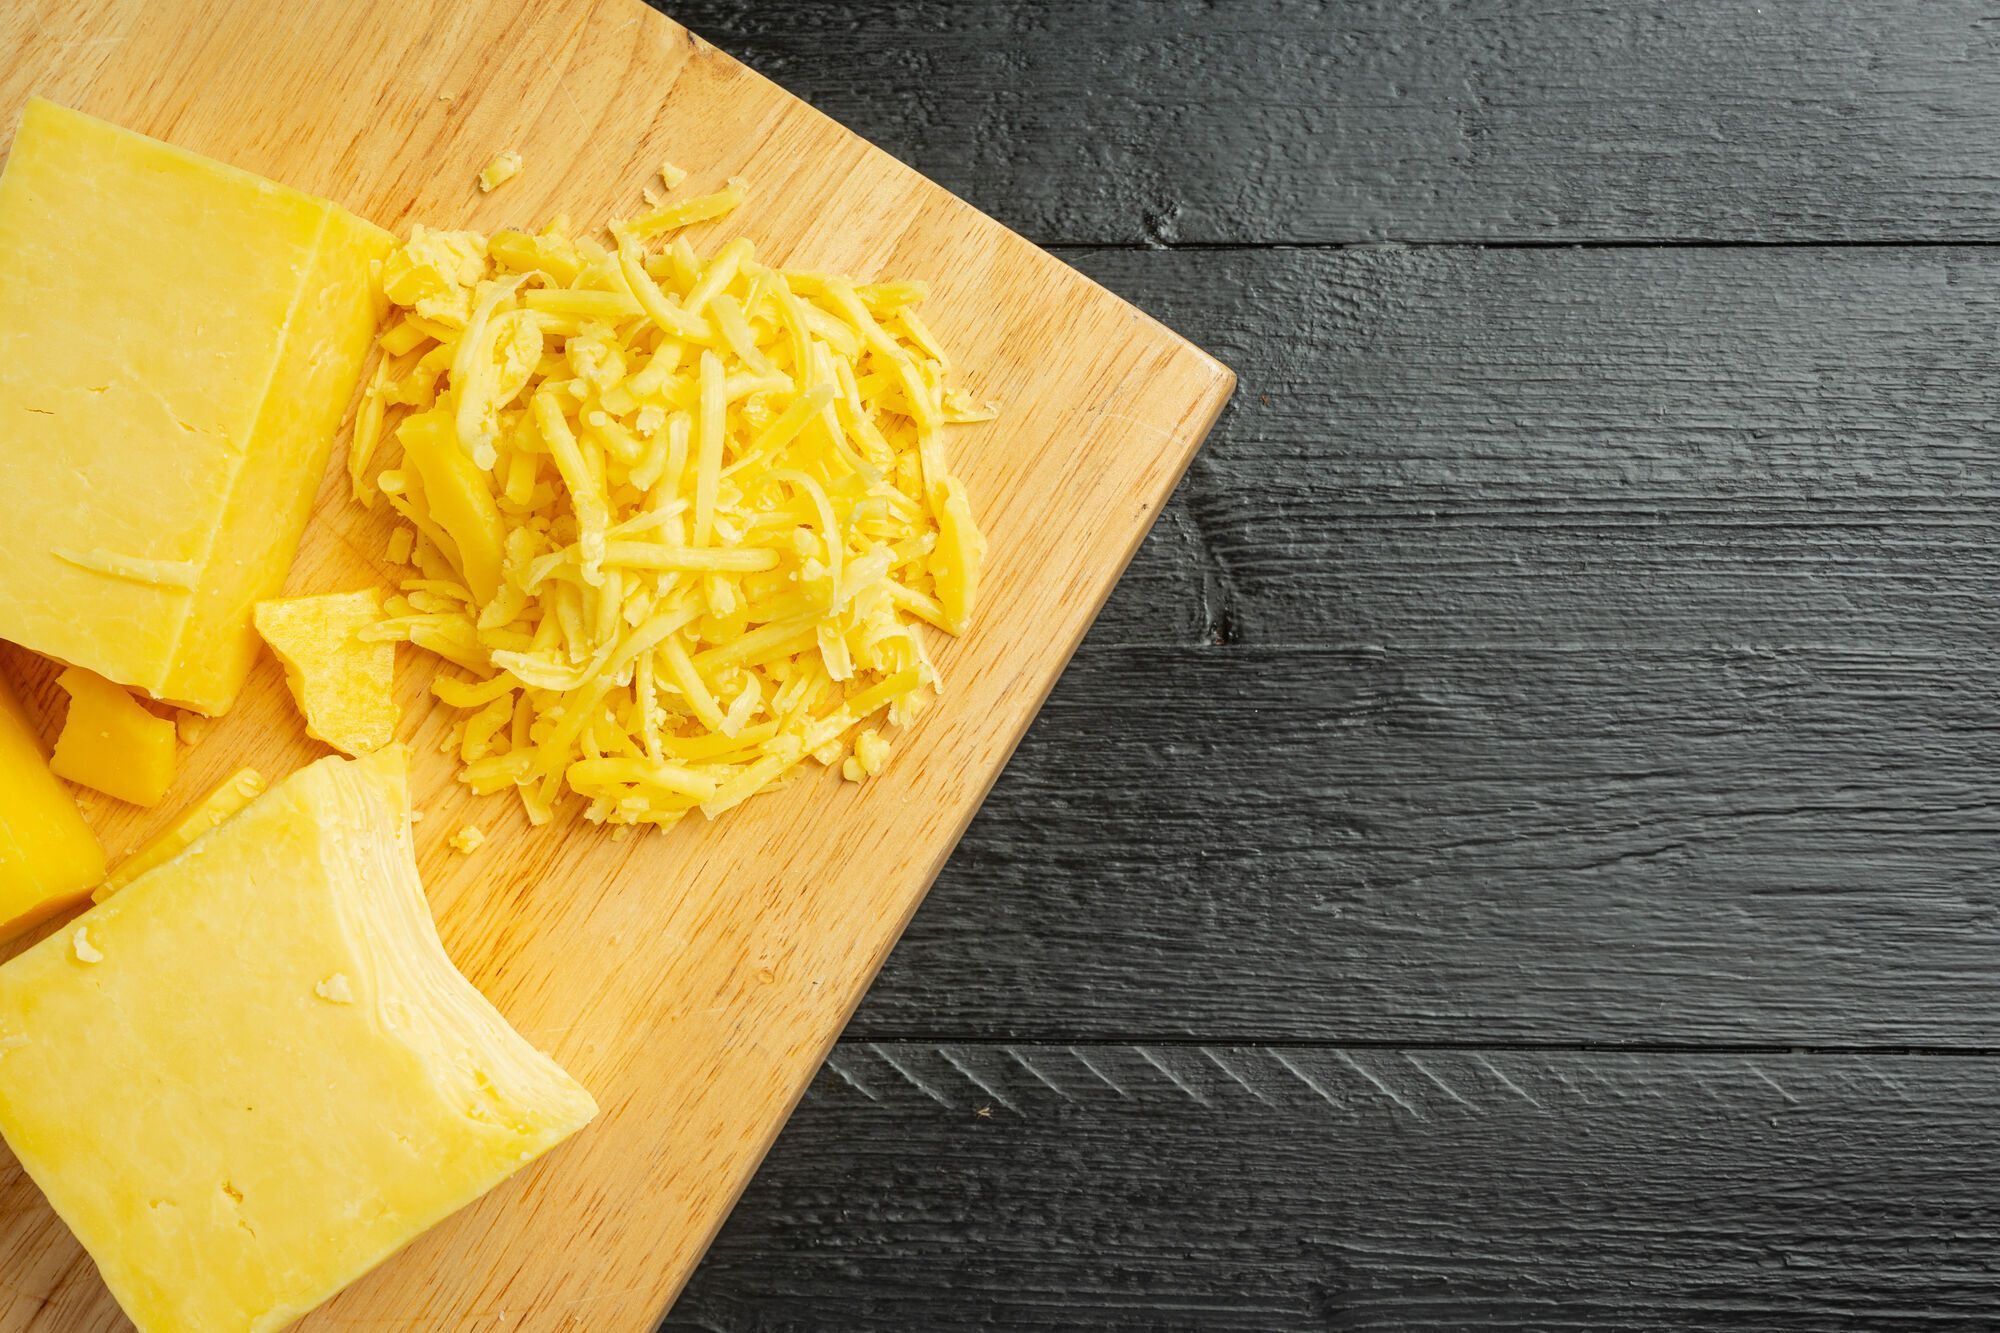 Як правильно користуватись теркою для сиру: лайфхак 